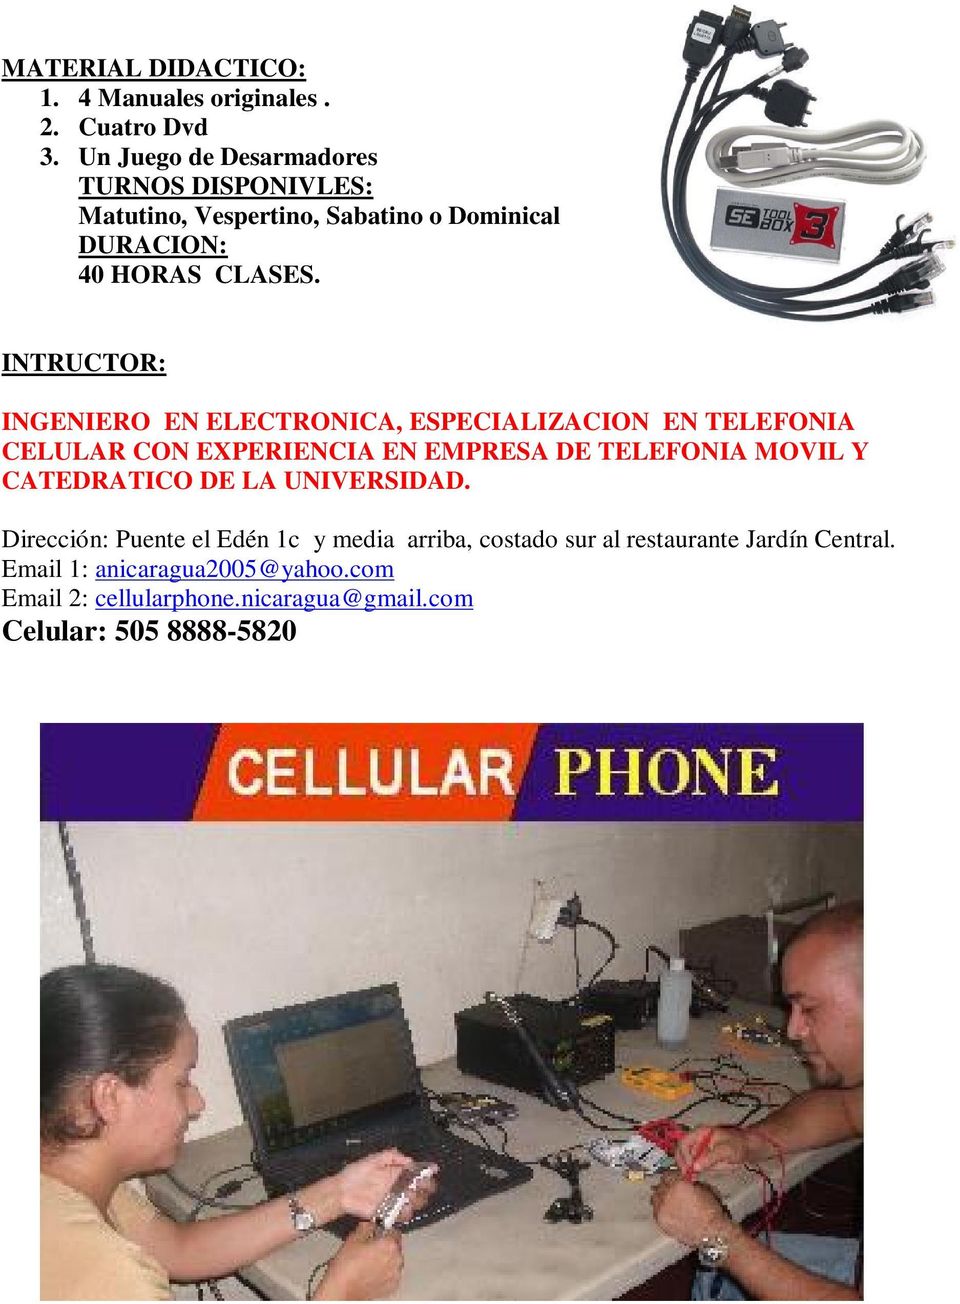 INTRUCTOR: INGENIERO EN ELECTRONICA, ESPECIALIZACION EN TELEFONIA CELULAR CON EXPERIENCIA EN EMPRESA DE TELEFONIA MOVIL Y